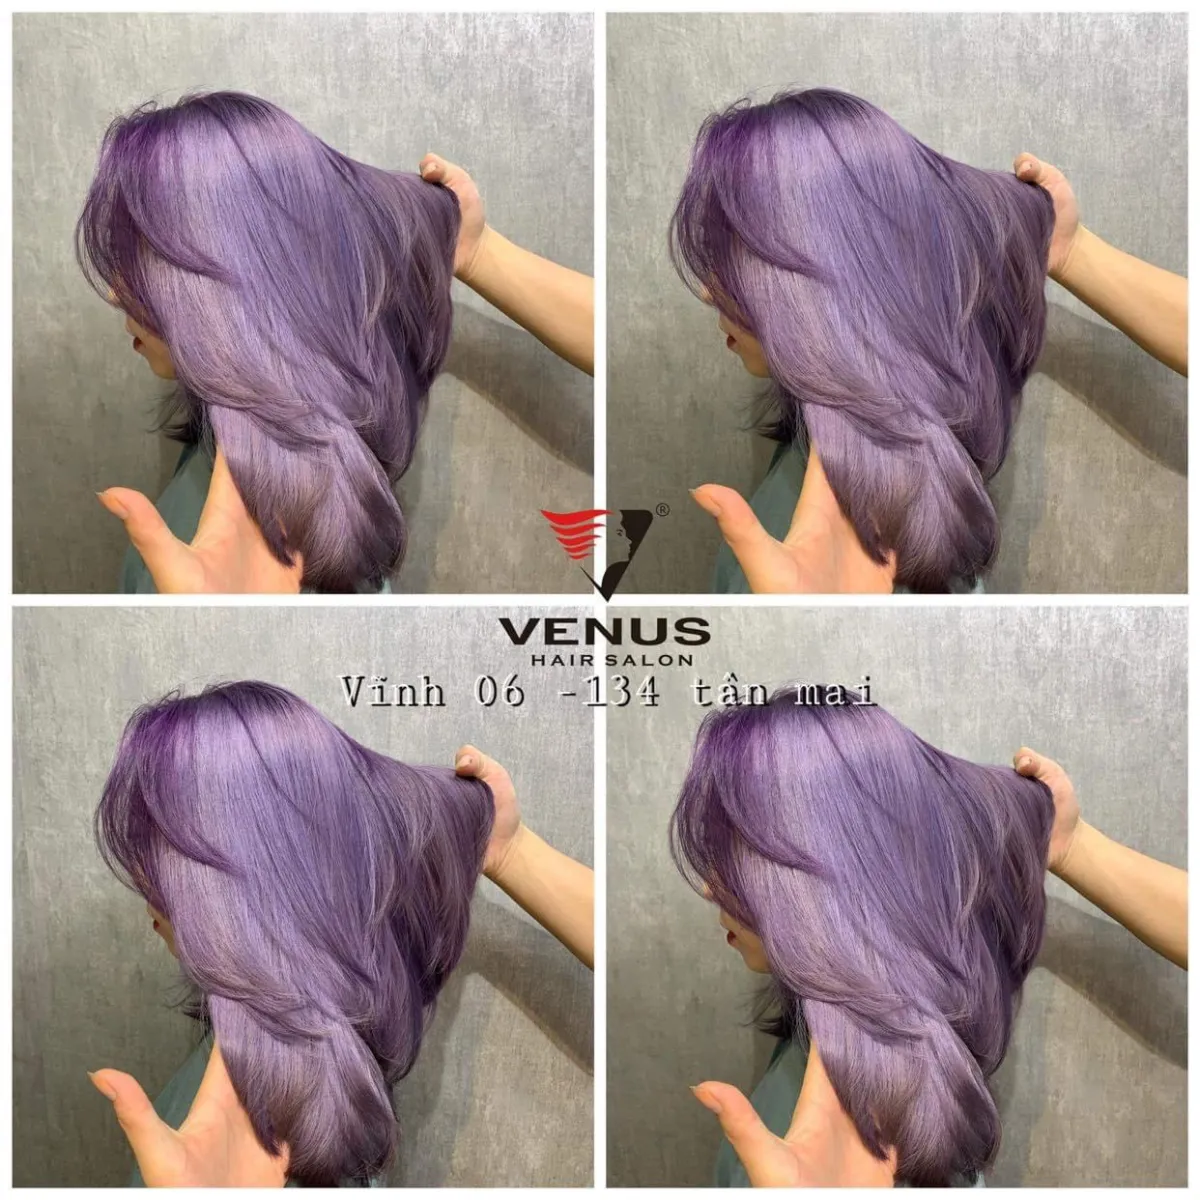 Bạn đang cảm thấy buồn chán với mái tóc của mình? Hãy thử nghĩ đến tóc tím violet! Màu sắc tươi sáng của tóc tím sẽ giúp bạn nổi bật hơn trong đám đông. Chúng tôi sẽ giúp bạn tìm kiếm những hình ảnh đẹp nhất về tóc tím violet.